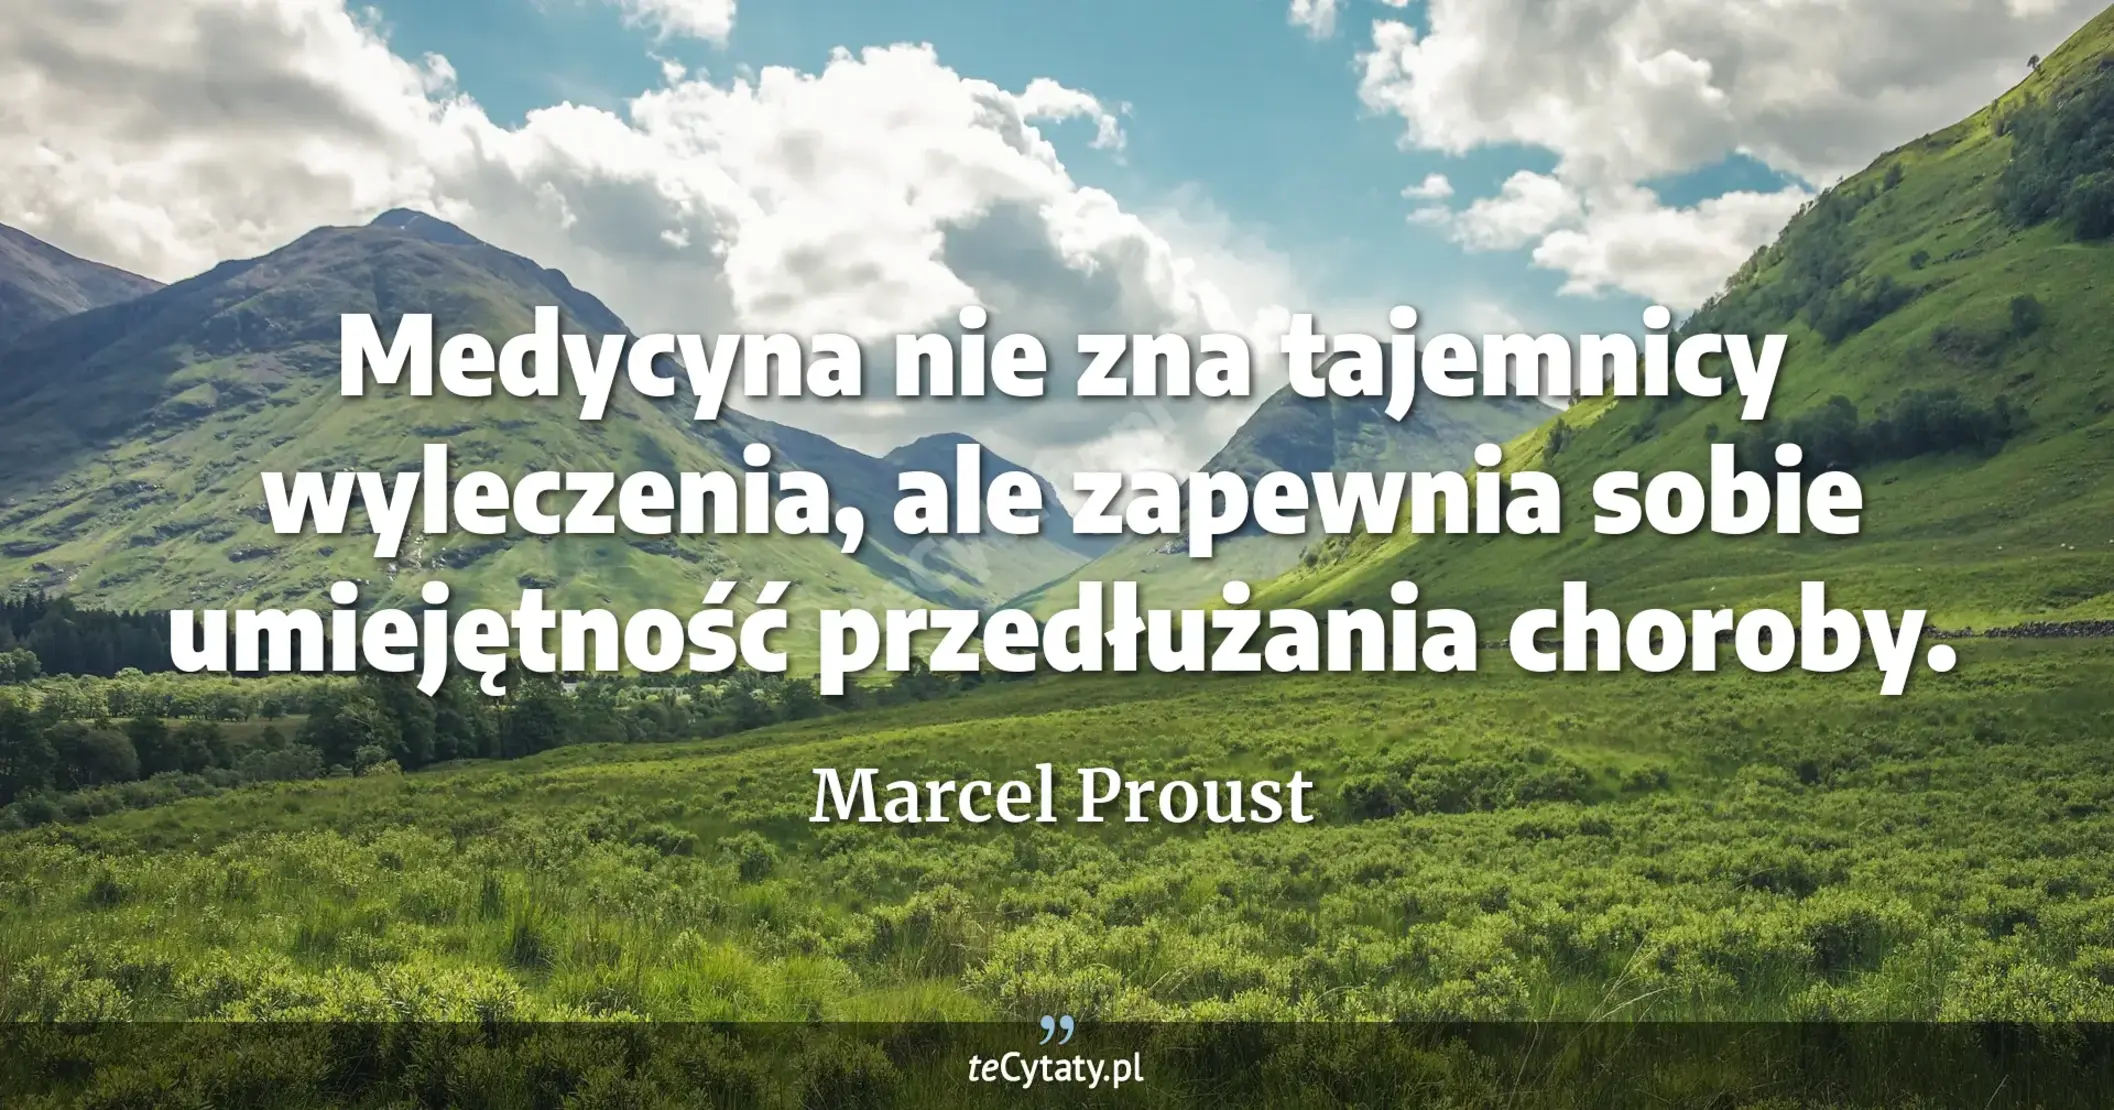 Medycyna nie zna tajemnicy wyleczenia, ale zapewnia sobie umiejętność przedłużania choroby. - Marcel Proust